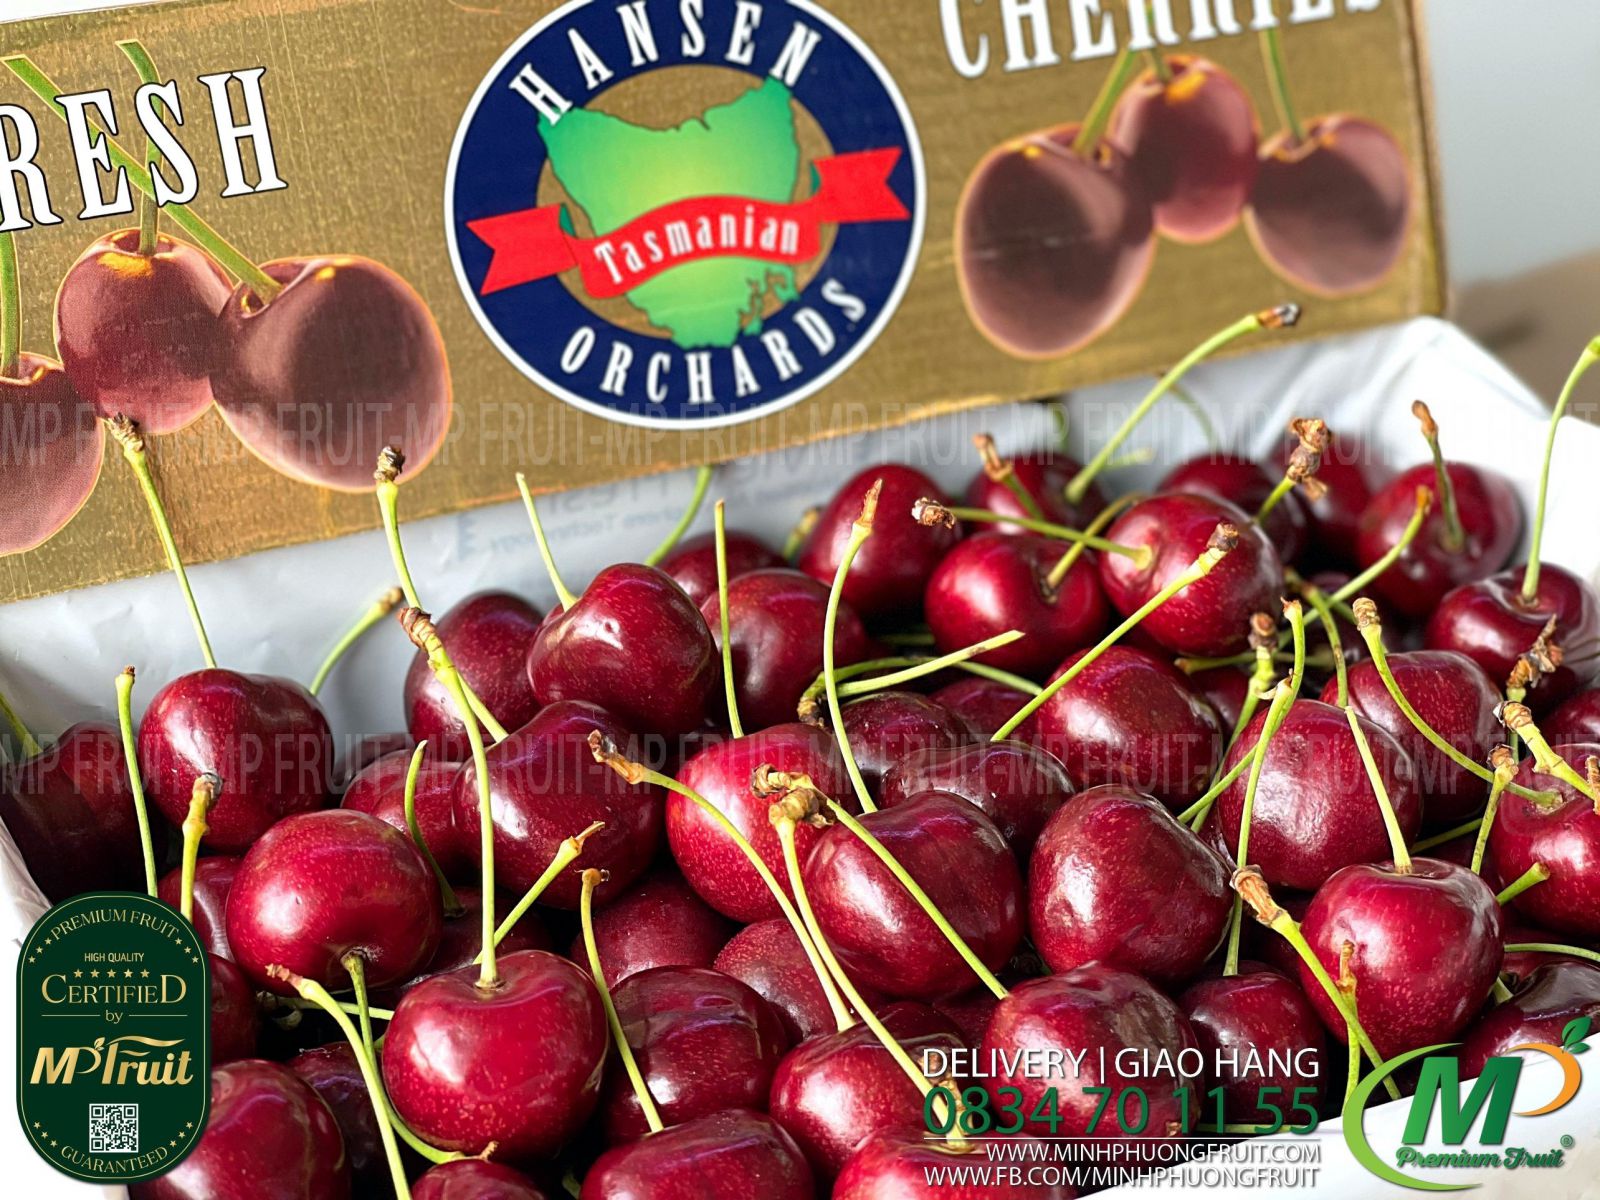 Cherry Đỏ Tasmania Size 30-32 | Hansen Orchards - Hộp 2kg thương hiệu lâu năm của Úc tại MP Fruit